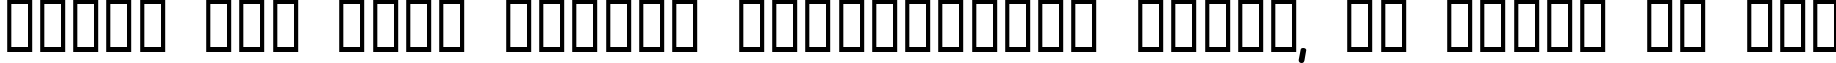 Пример написания шрифтом Olympus Bold текста на русском